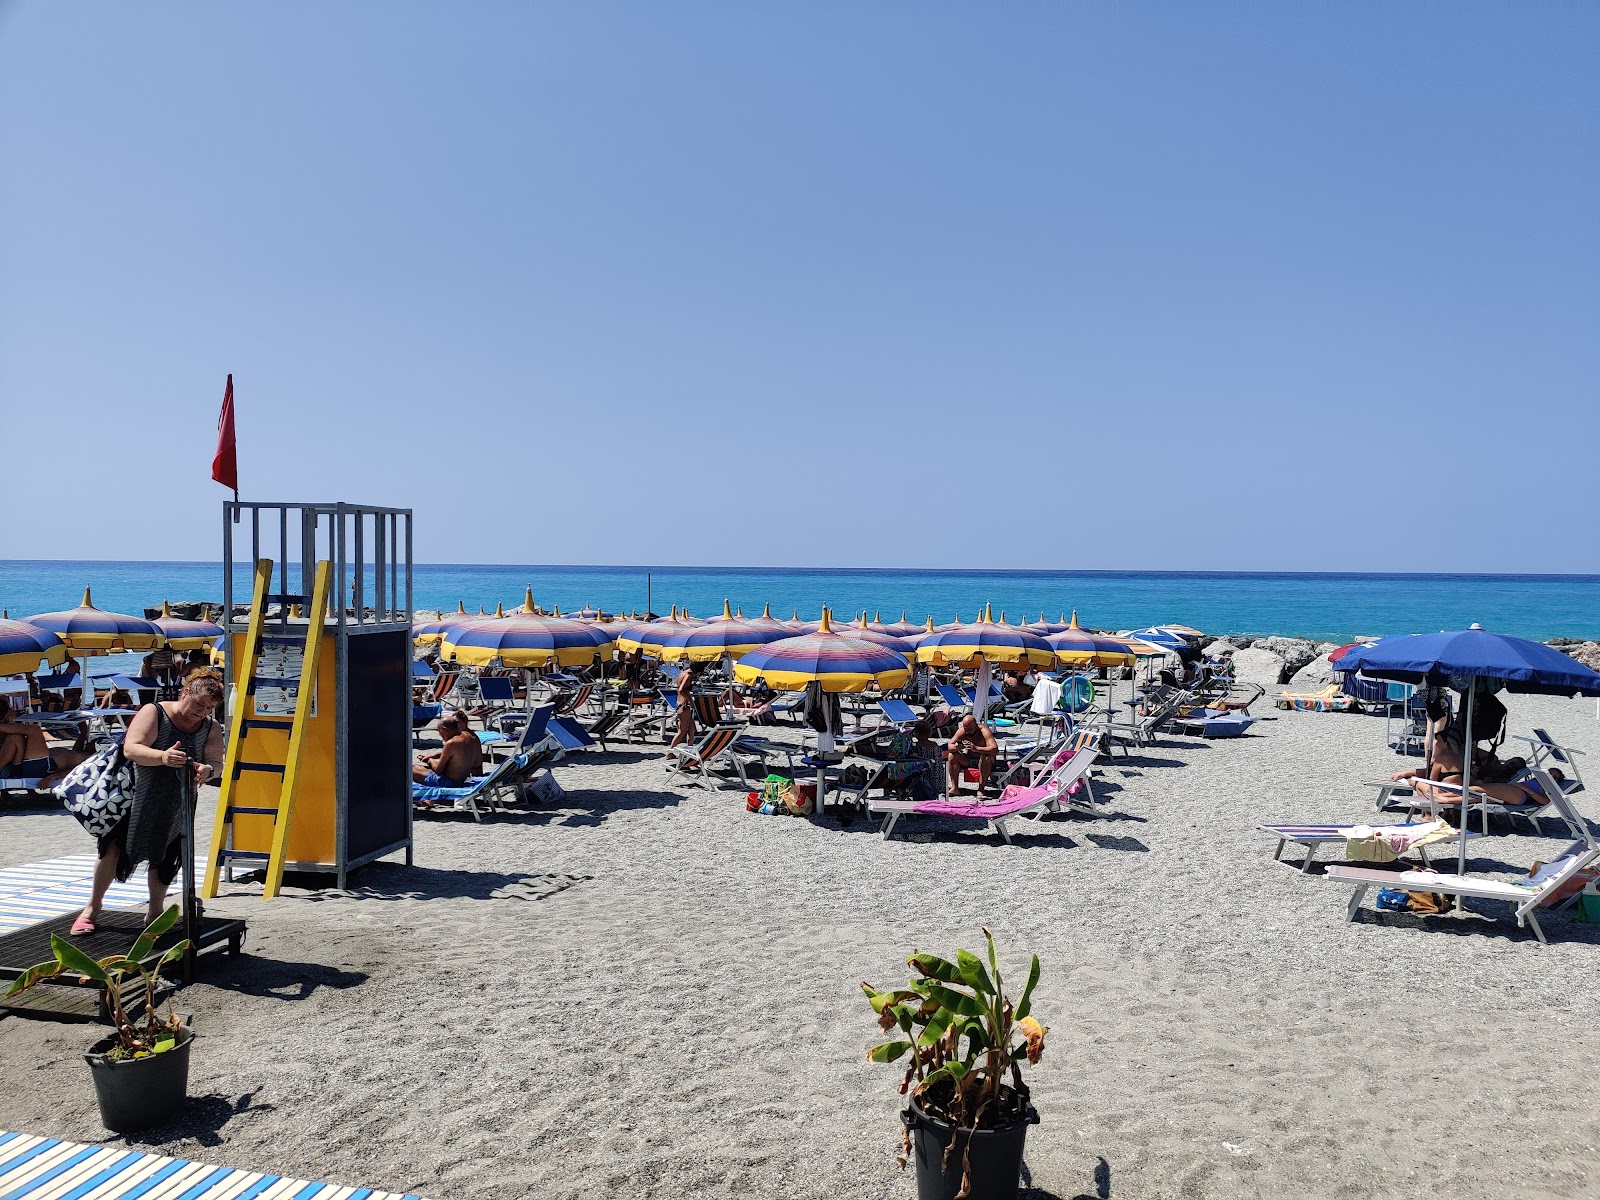 Photo of Spiaggia Coreca with straight shore